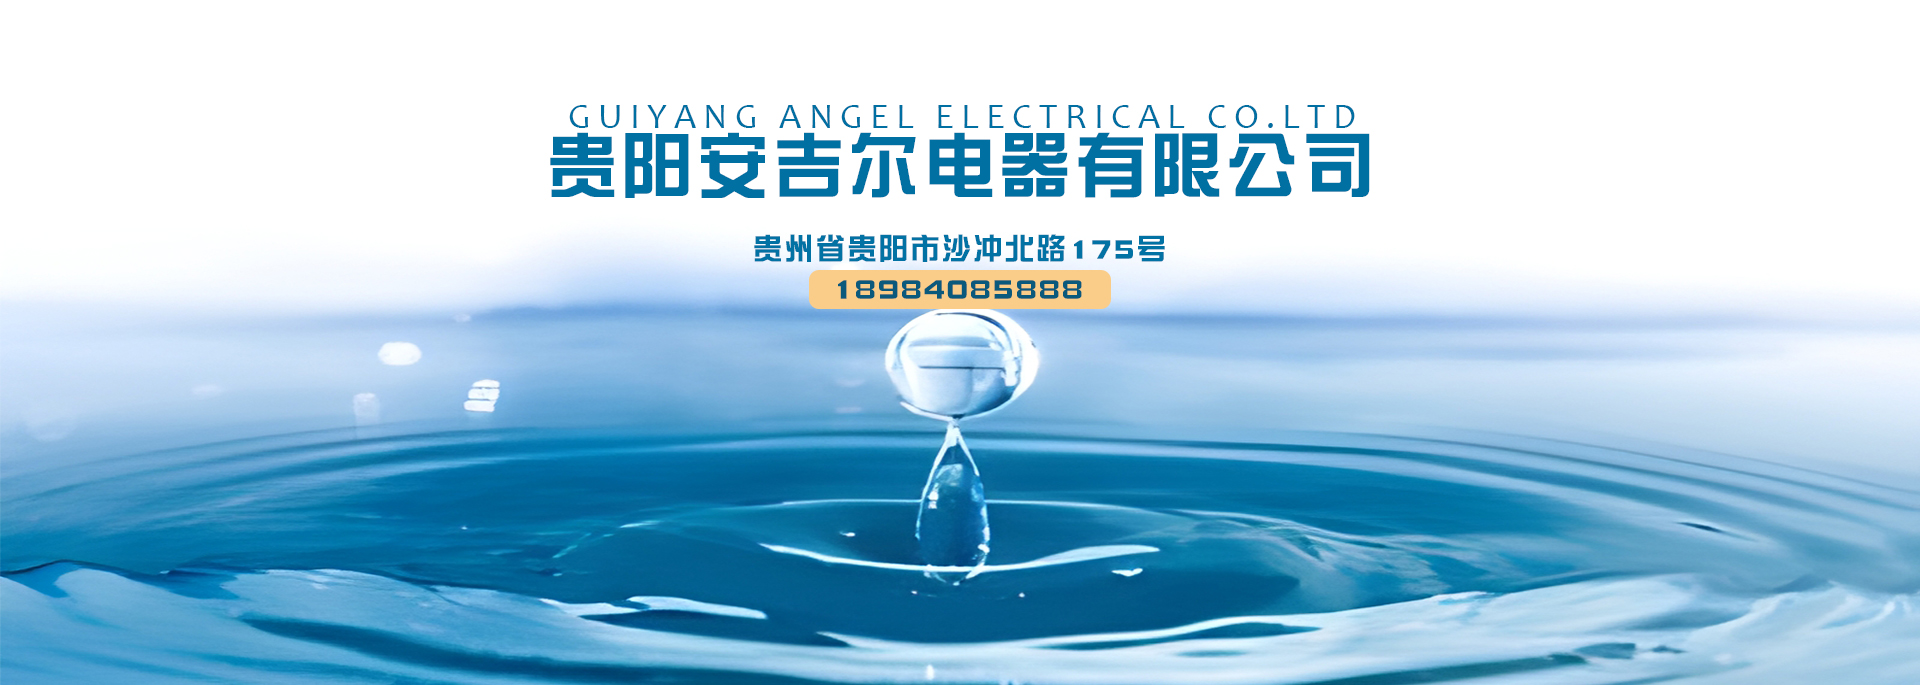 銅仁純凈水處理設備公司